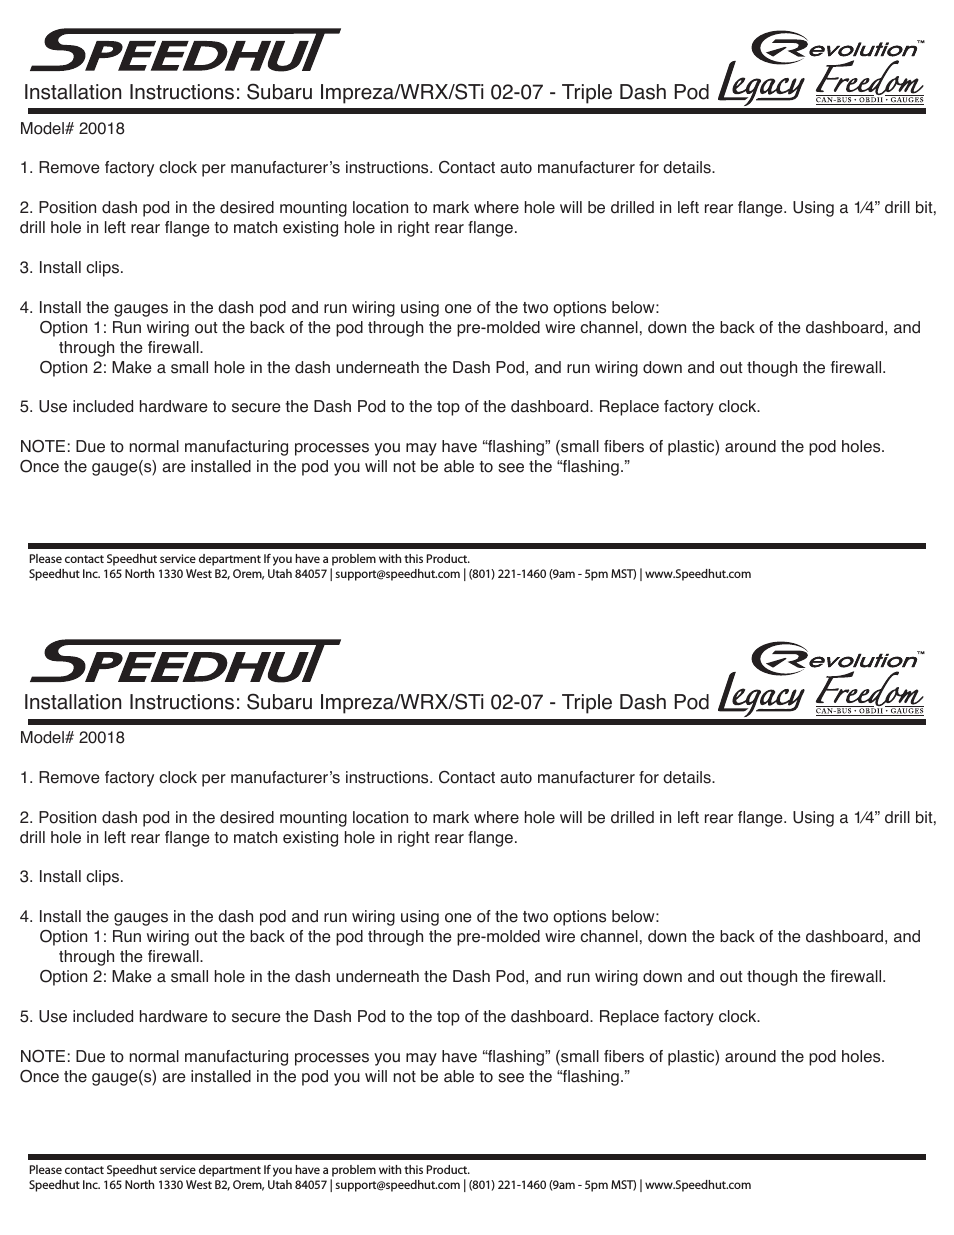 2002-2007 Subaru Impreza_WRX_STi Triple Dash Pod